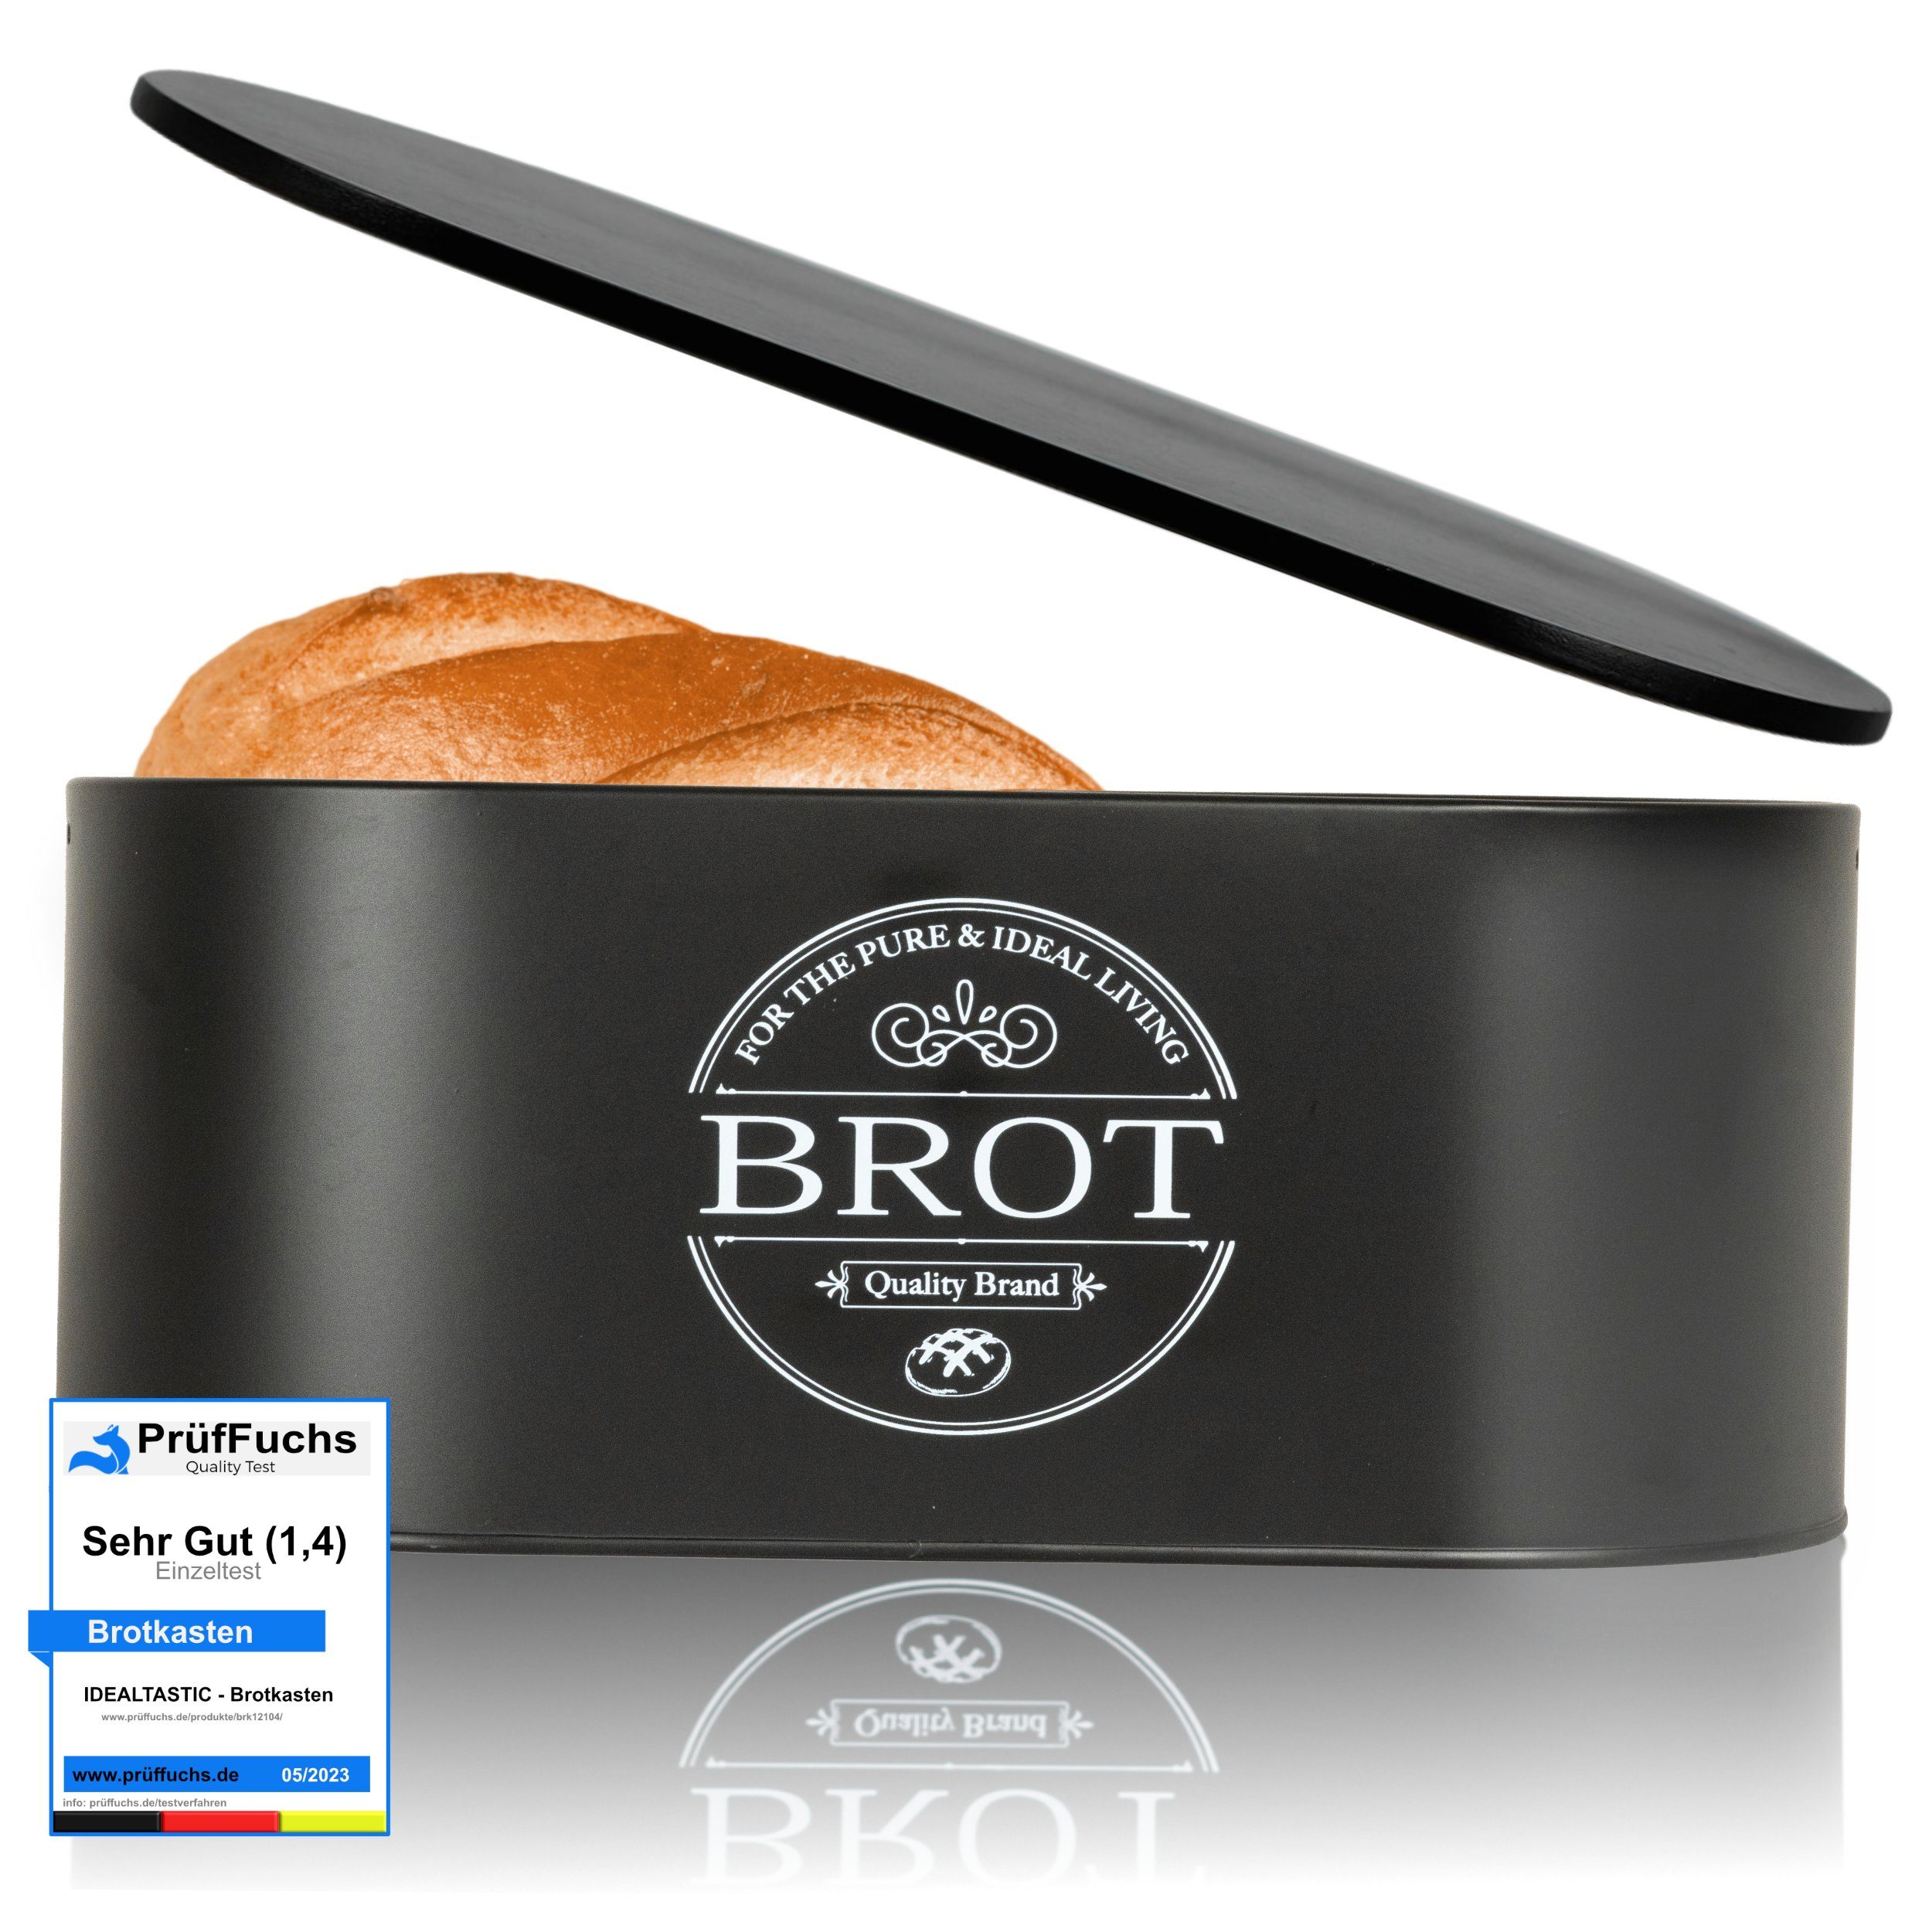 IDEALTASTIC Brotkasten Premium 2-in-1 Brotkasten für die ideale Brot Aufbewahrung, Stahl, (Brot Aufbewahrung, Brotkästen), Länger frischhaltende Brotbox & speziell entwickelter Luftzirkulation